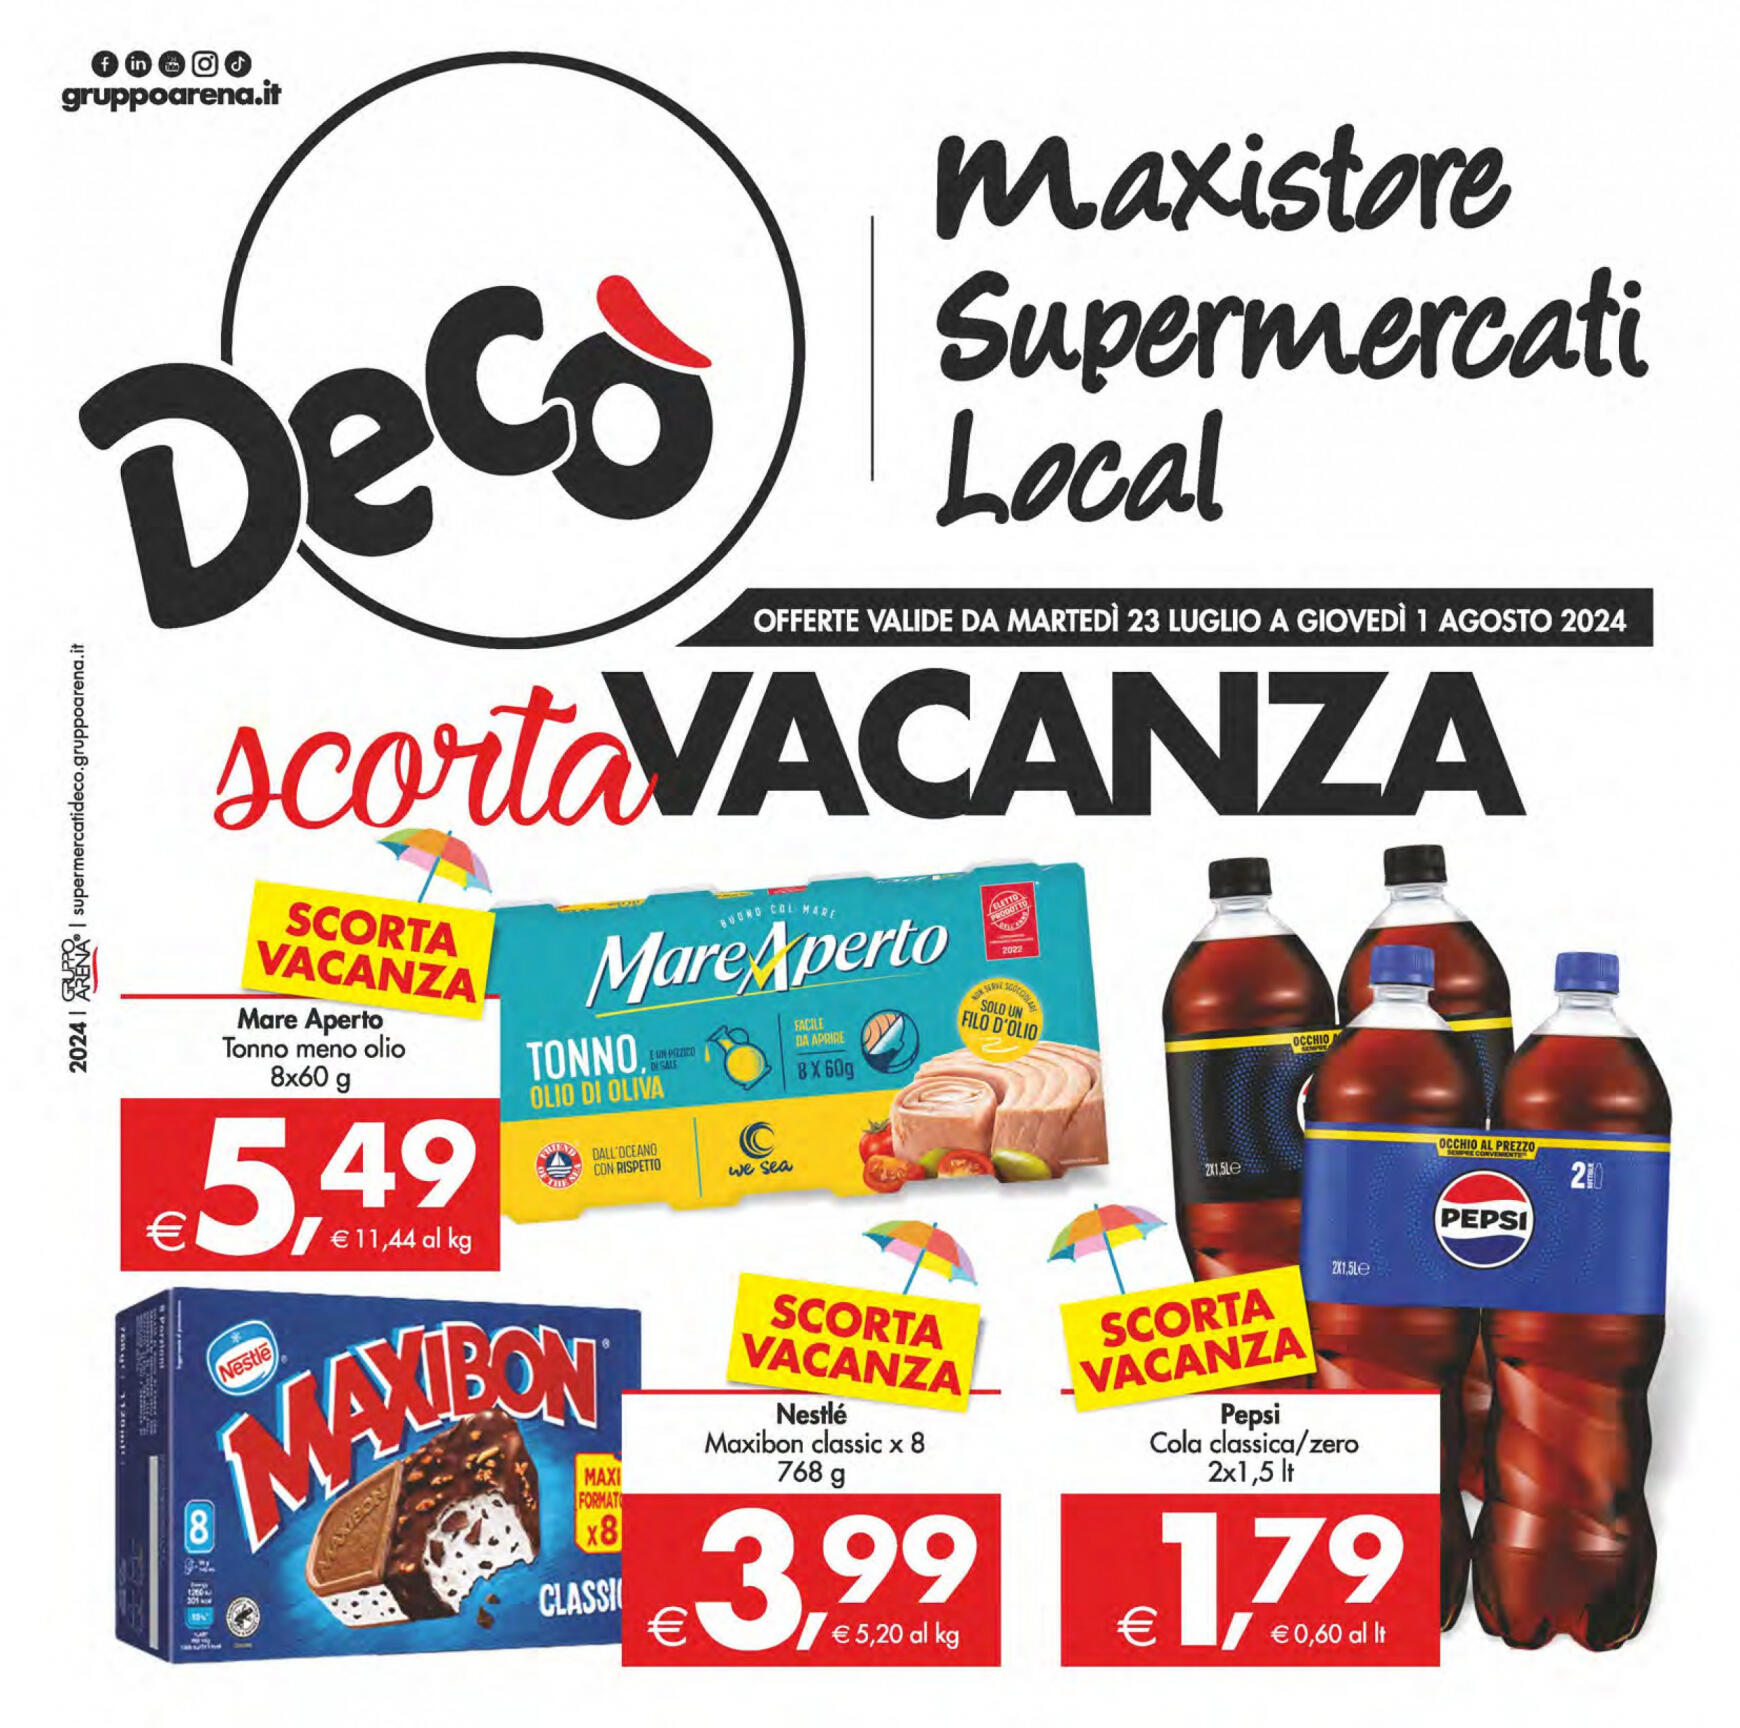 deco - Nuovo volantino Decò - Supermercati/Maxistore/Local 23.07. - 01.08.